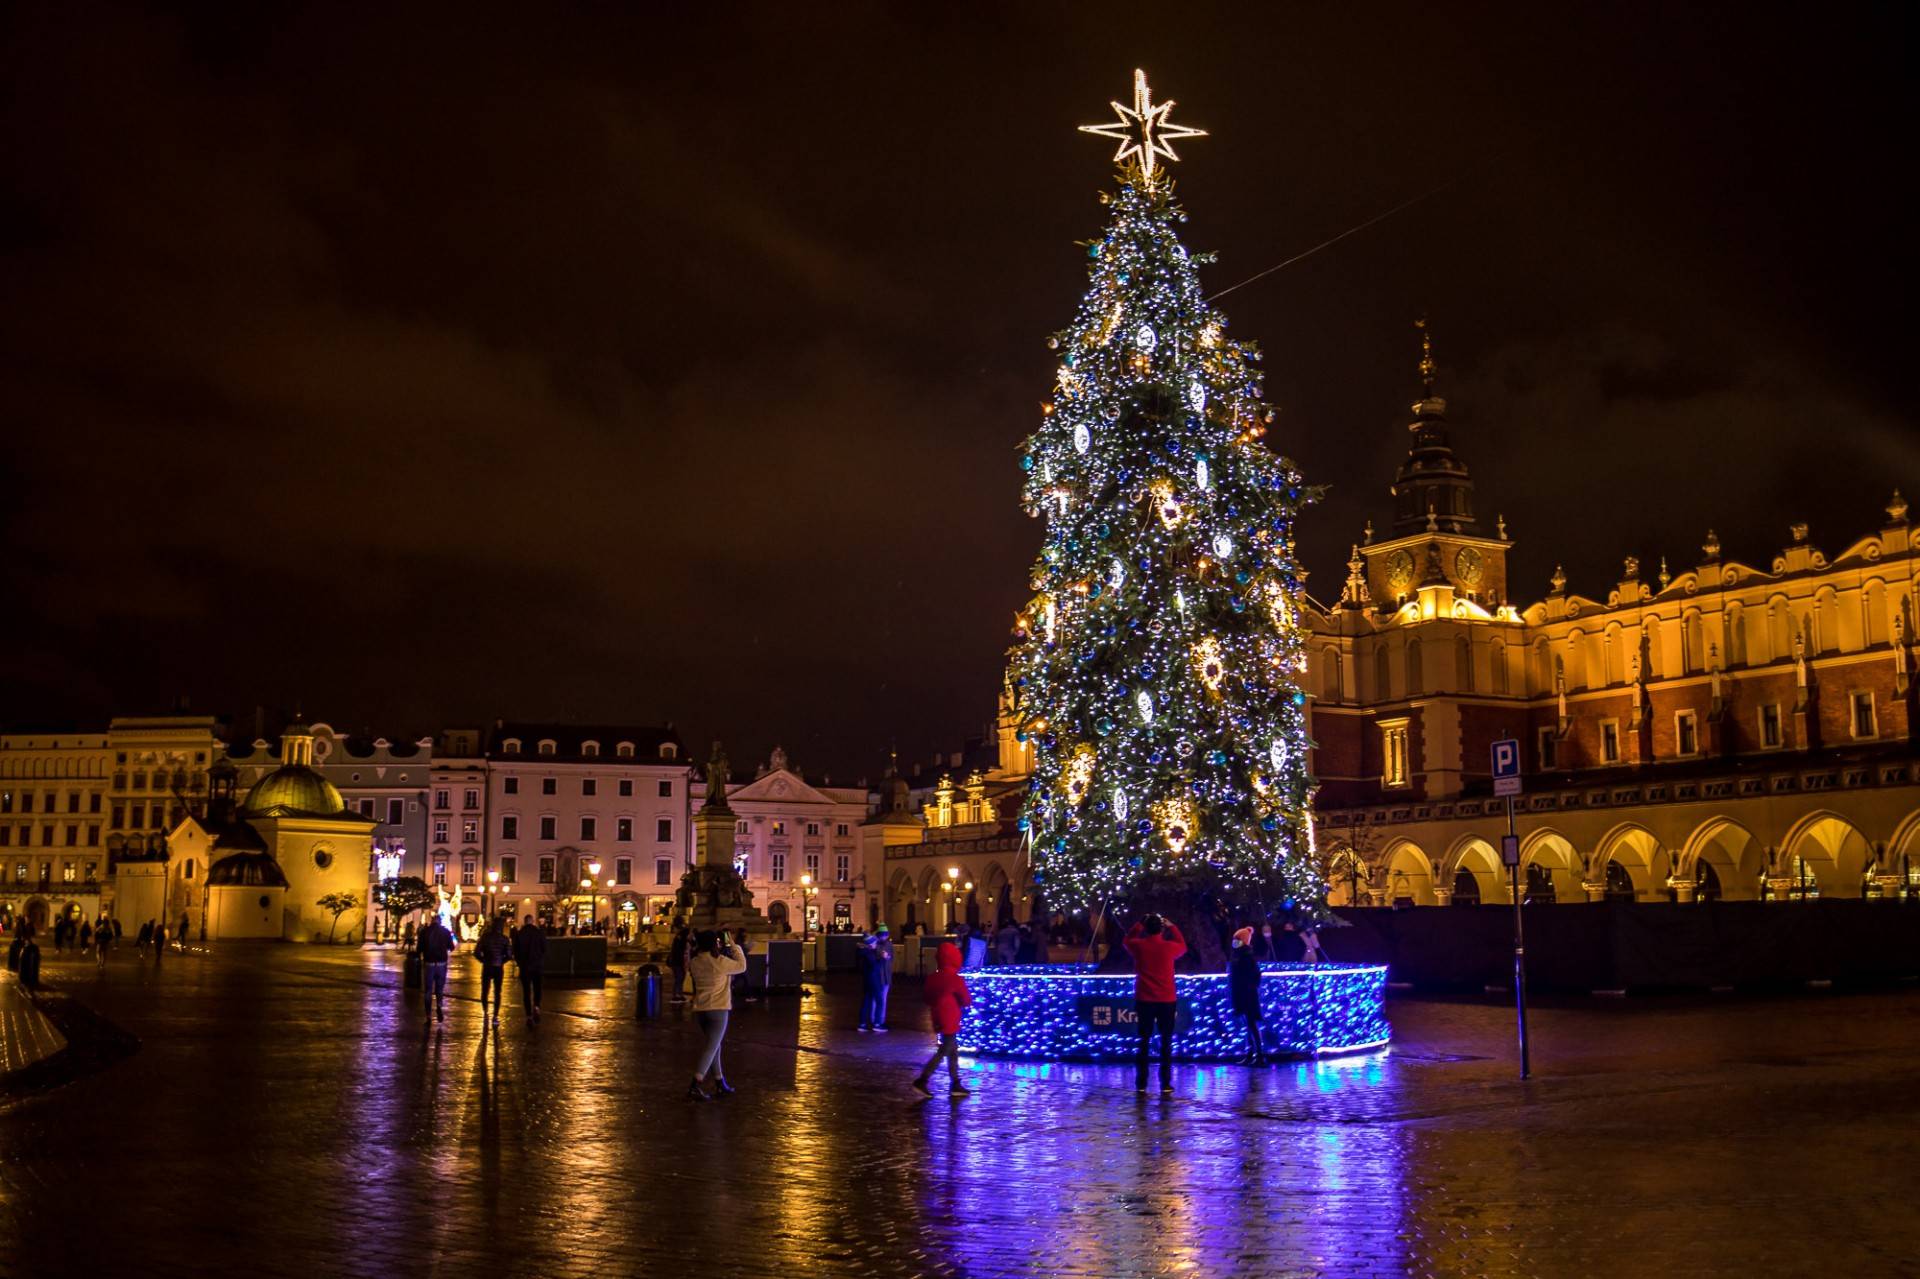 W Krakowie czuć już nastrój świąt. Rozbłysły świąteczne iluminacje